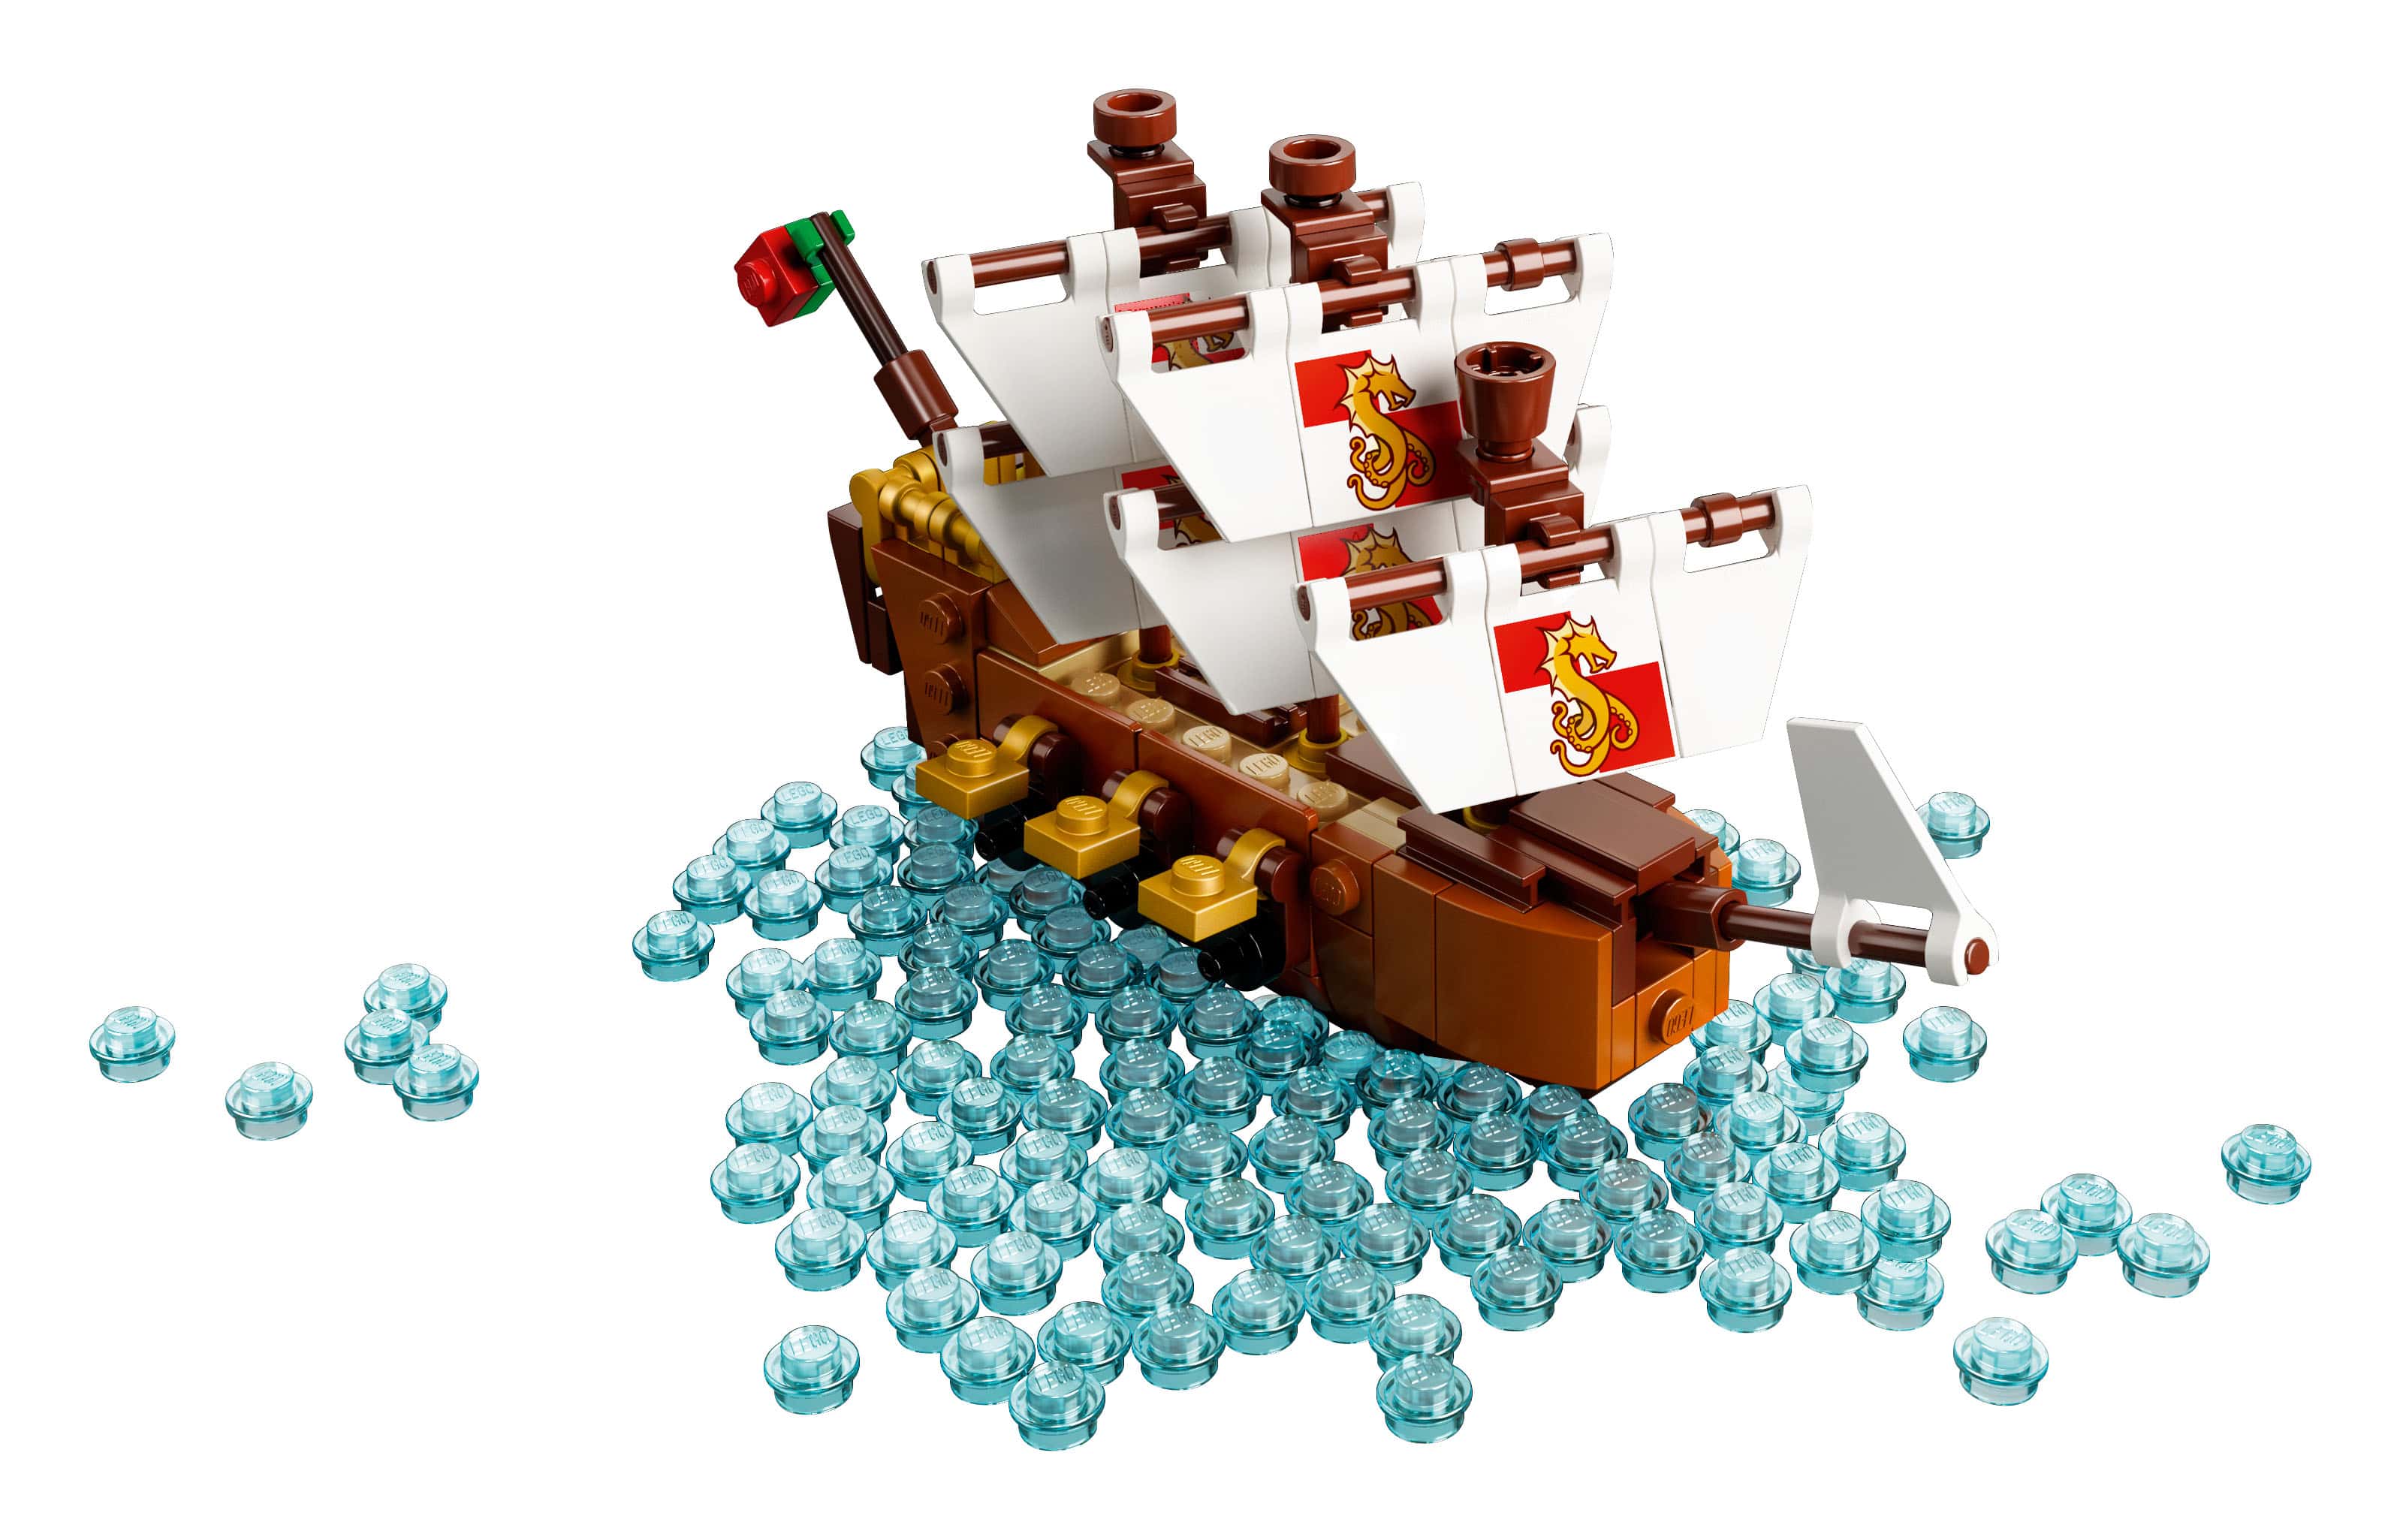 Con tàu xinh đẹp có tên "Leviathan" mặc dù " bé bé xinh xinh" nhưng cũng đầy đủ công năng cơ bản như : khu thuyền truởng, cột buồm, cờ, khẩu đại bác.....